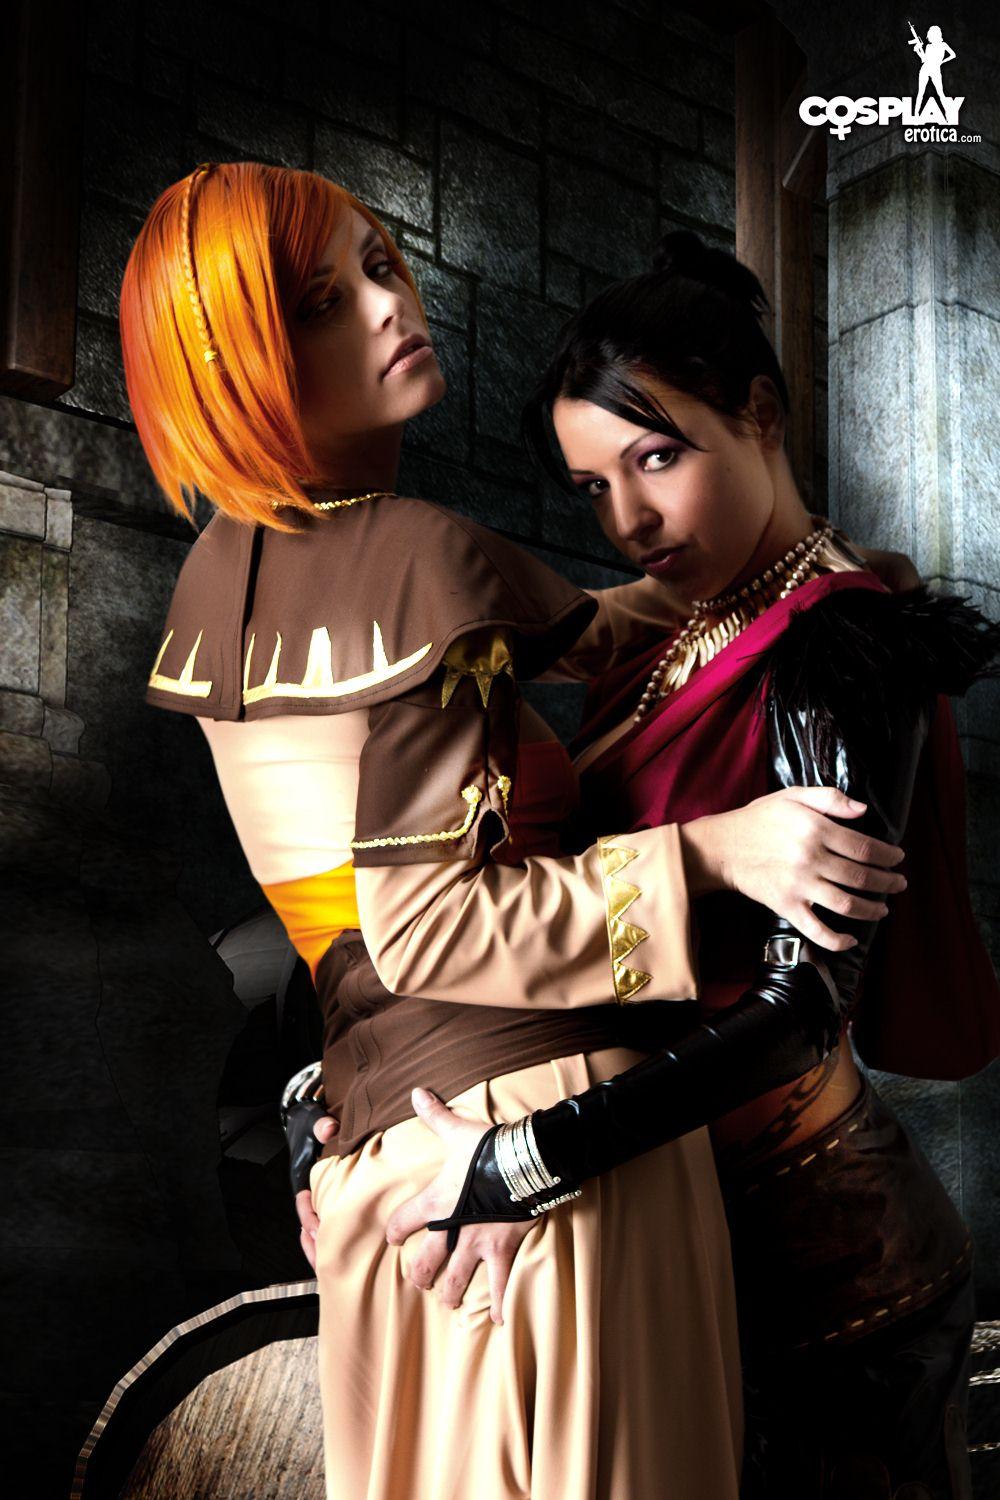 Immagini di nayma e mea facendo un caldo lesbica dragon age cosplay
 #59444445